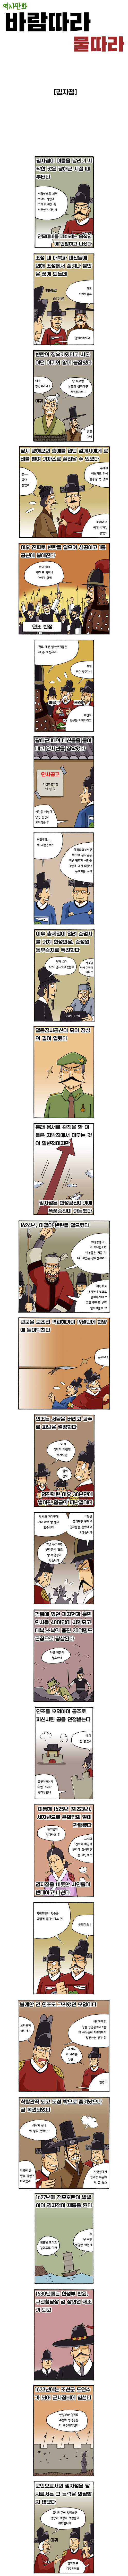 역사만화 [바람따라 물따라] -김자점 편- | 창작만화 | RULIWEB